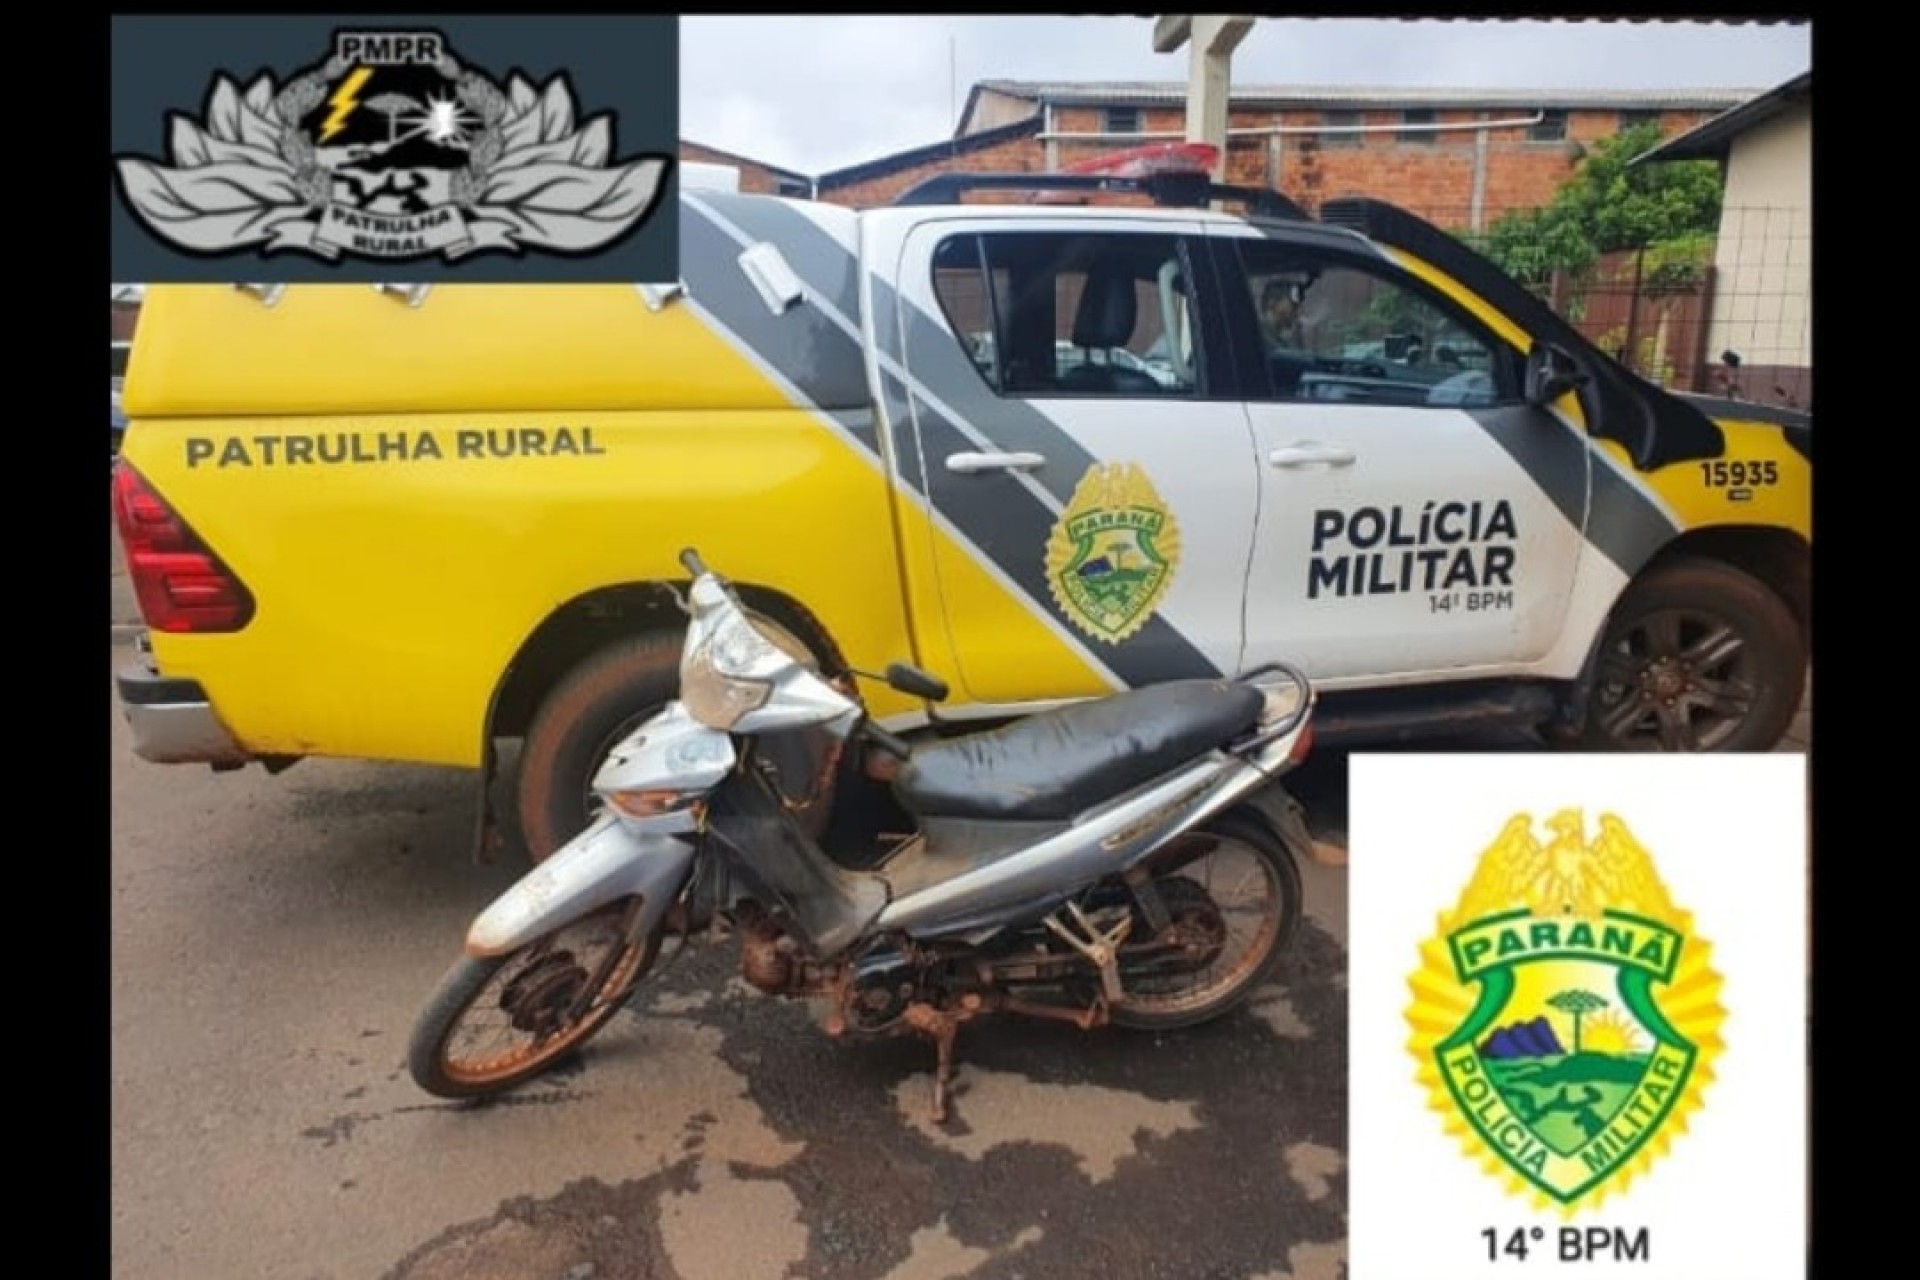 São Miguel do Iguaçu: Patrulha Rural apreende motocicleta com indícios de furto/roubo